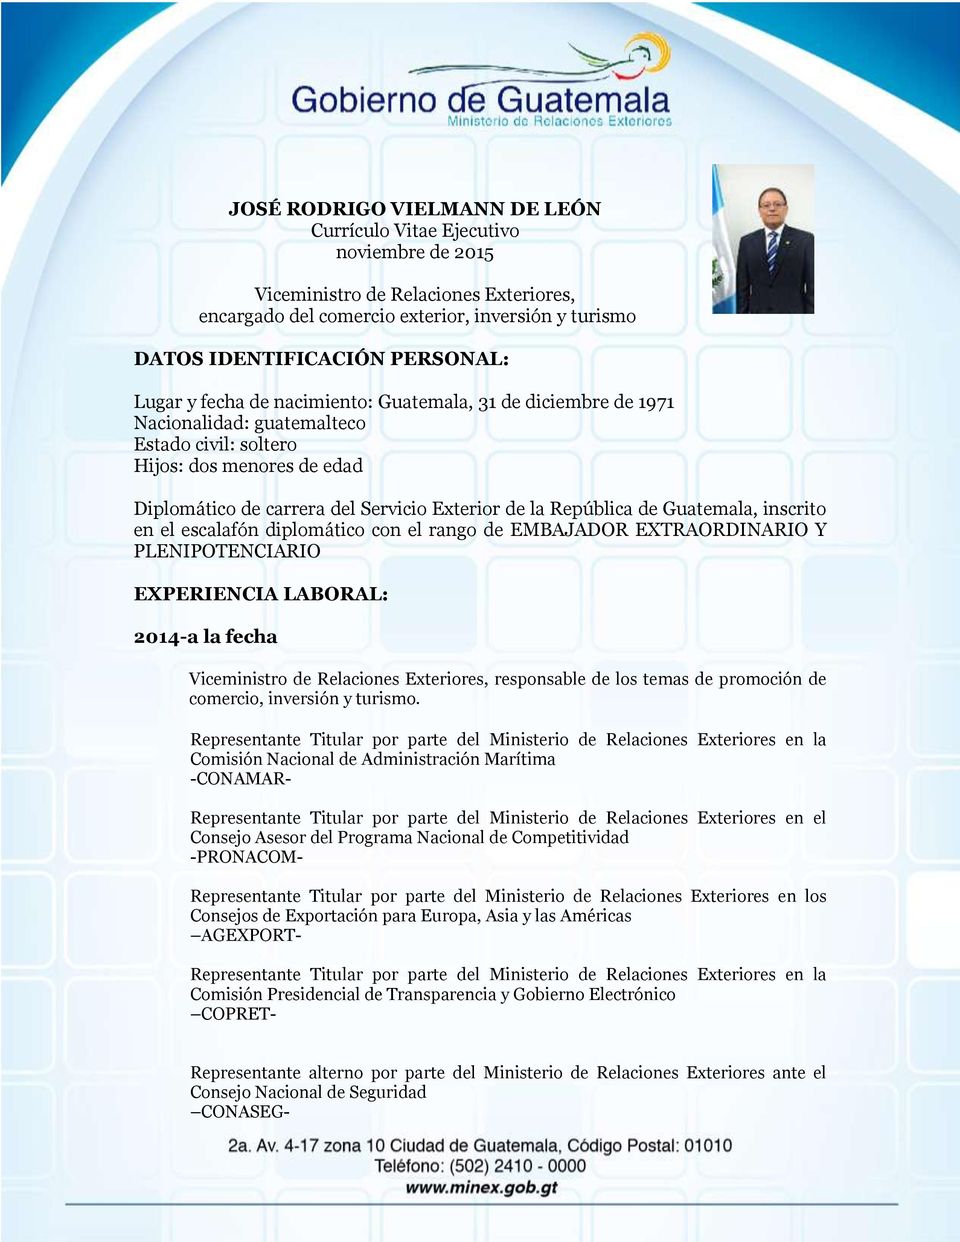 República de Guatemala, inscrito en el escalafón diplomático con el rango de EMBAJADOR EXTRAORDINARIO Y PLENIPOTENCIARIO EXPERIENCIA LABORAL: 2014-a la fecha Viceministro de Relaciones Exteriores,